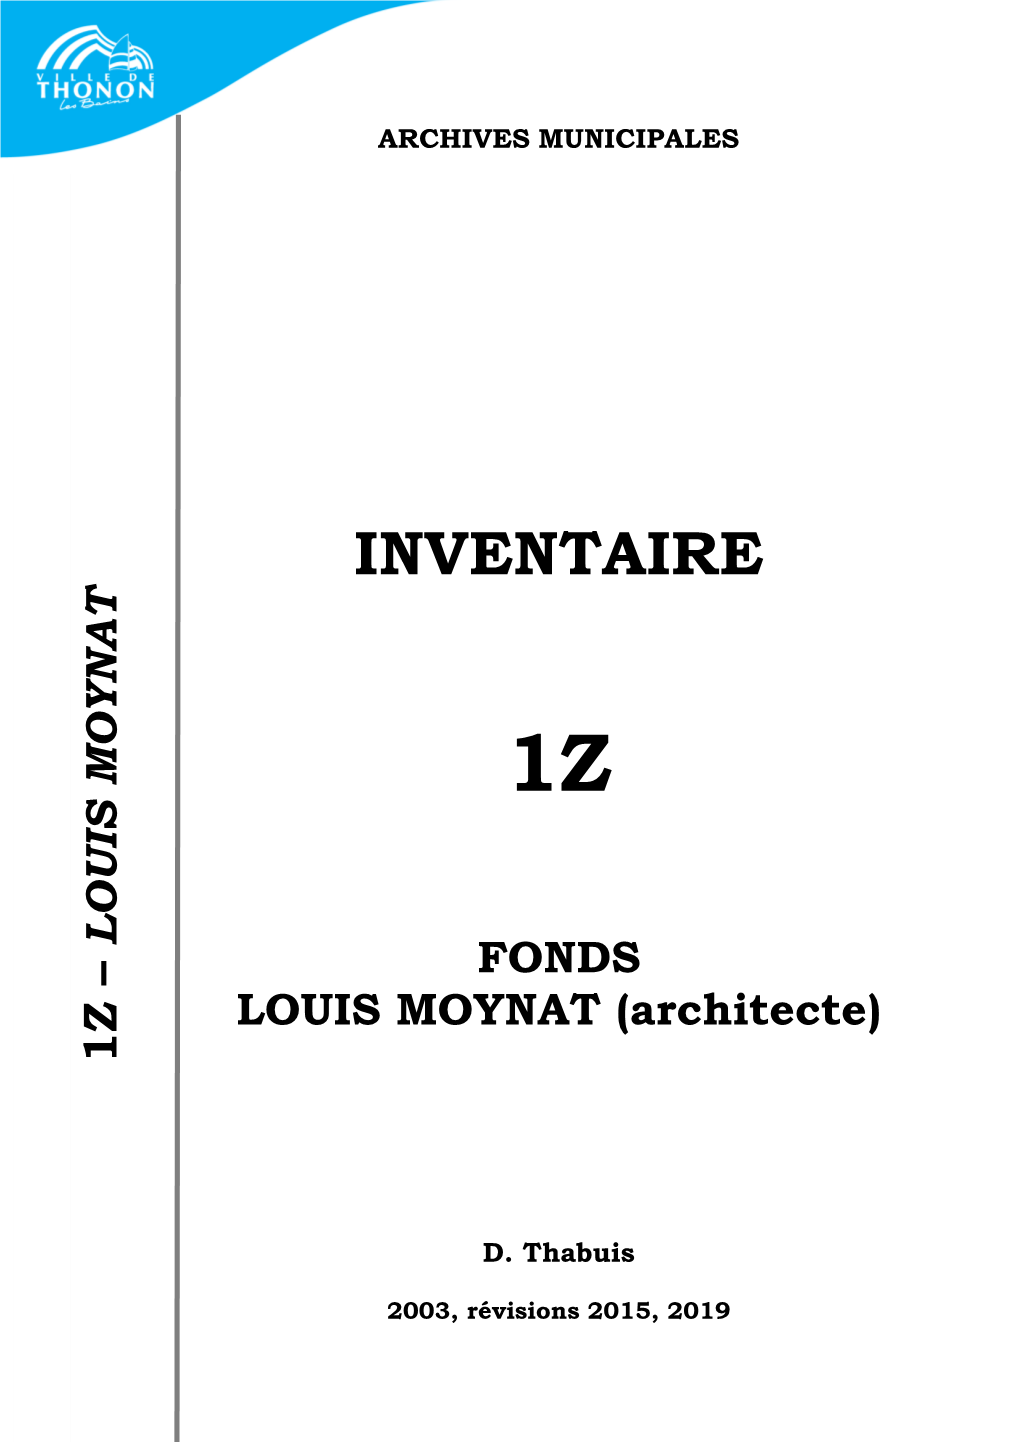 LOUIS MOYNAT LOUIS MOYNAT (Architecte) INVENTAIRE ARCHIVES 2003, Révisions FONDS D